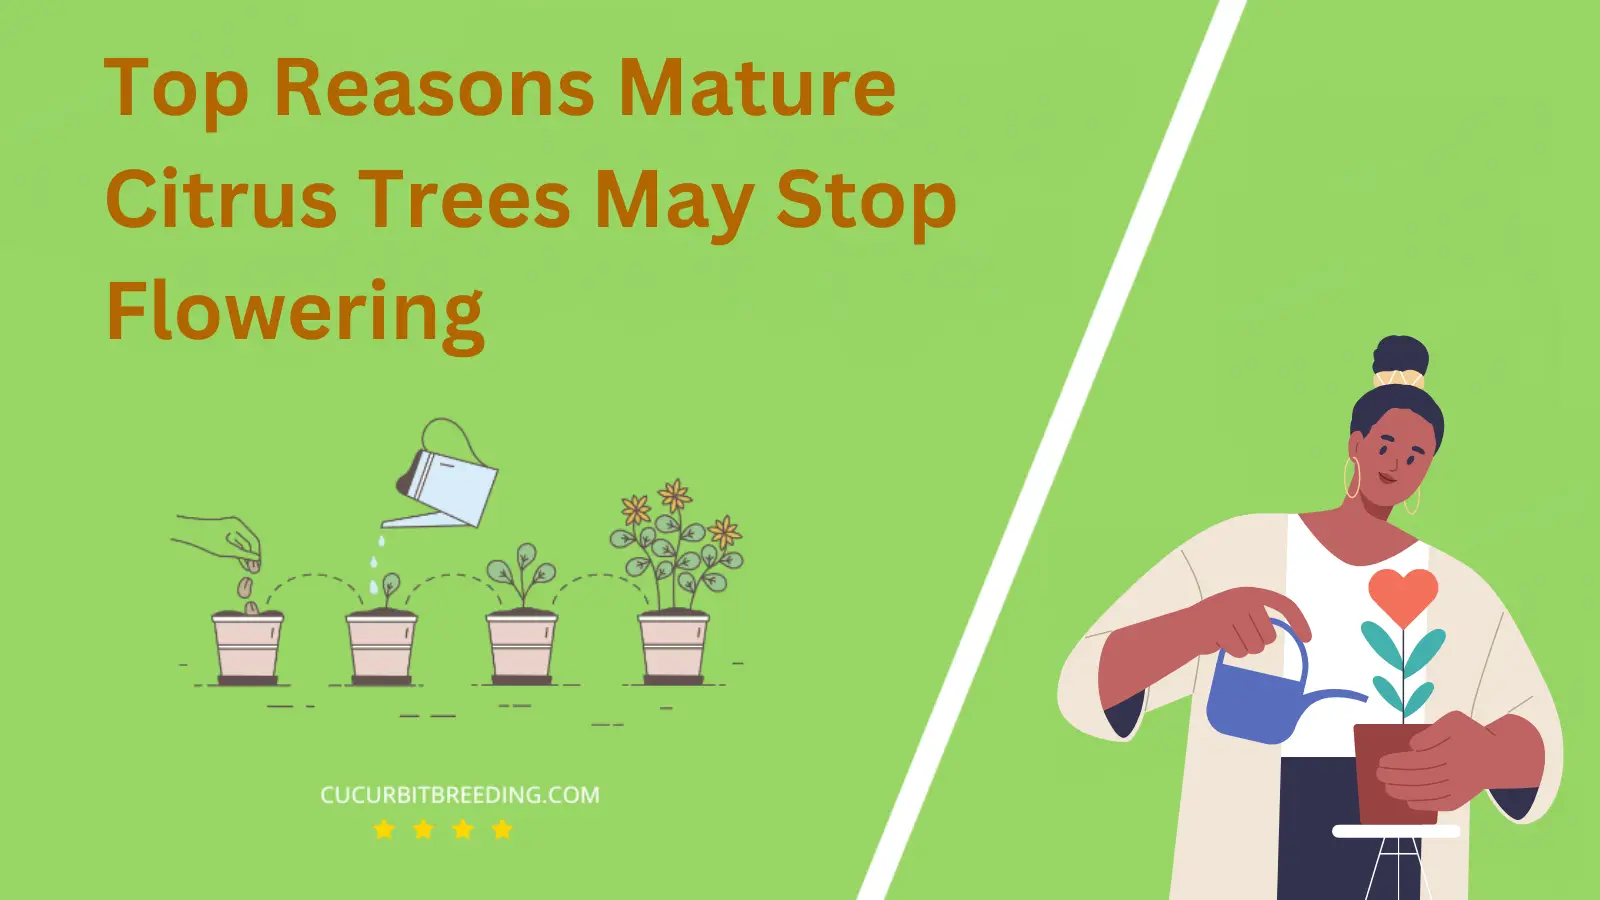 Top Reasons Mature Citrus Trees May Stop Flowering